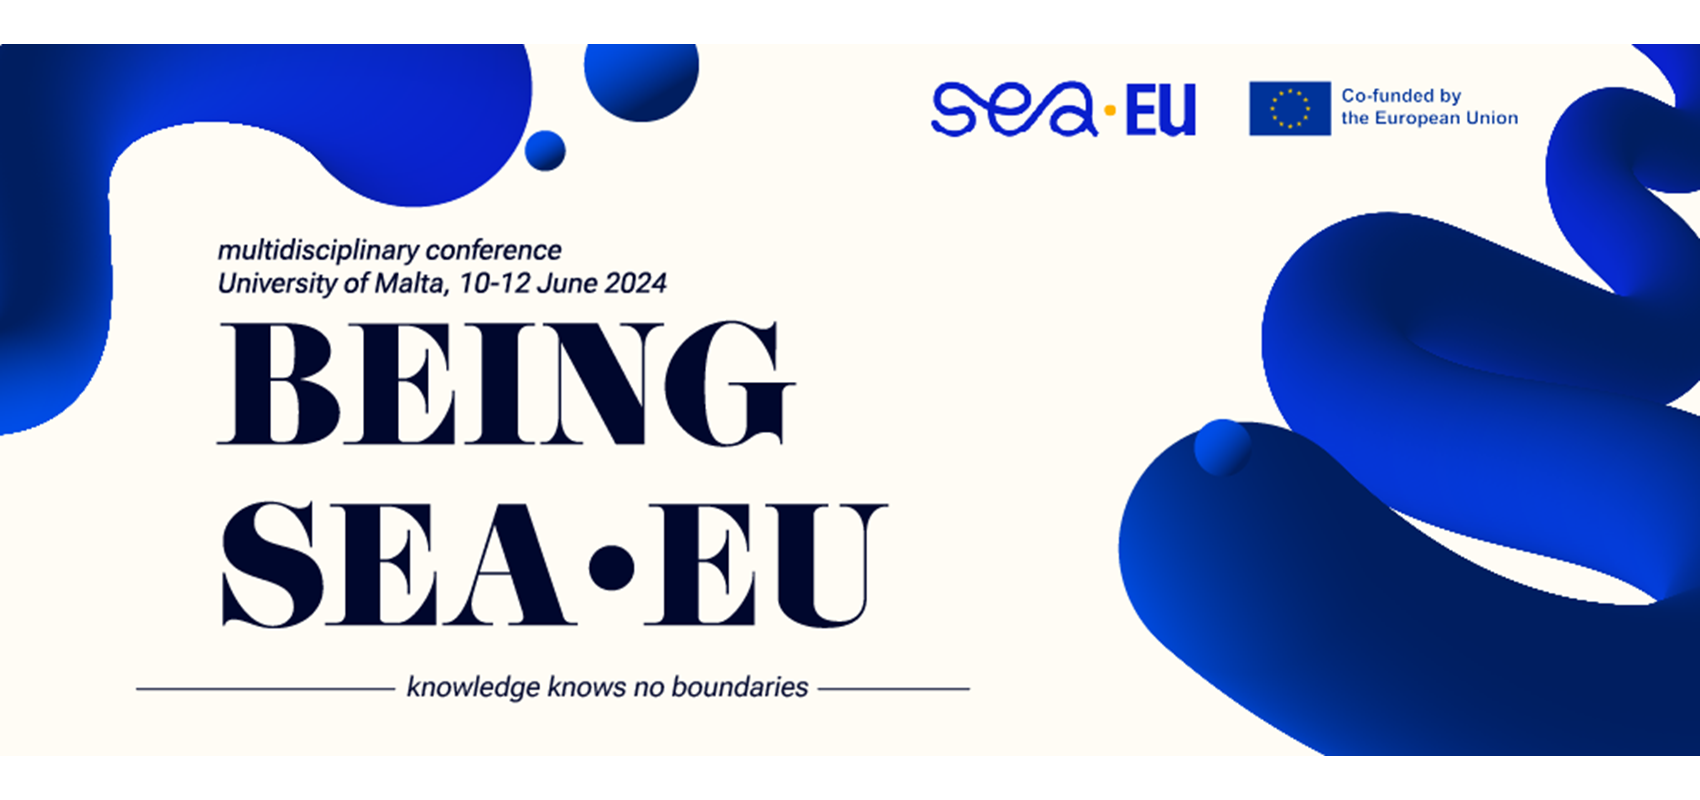 Krenule su prijave za konferenciju na Malti pod nazivom Being SEA-EU!